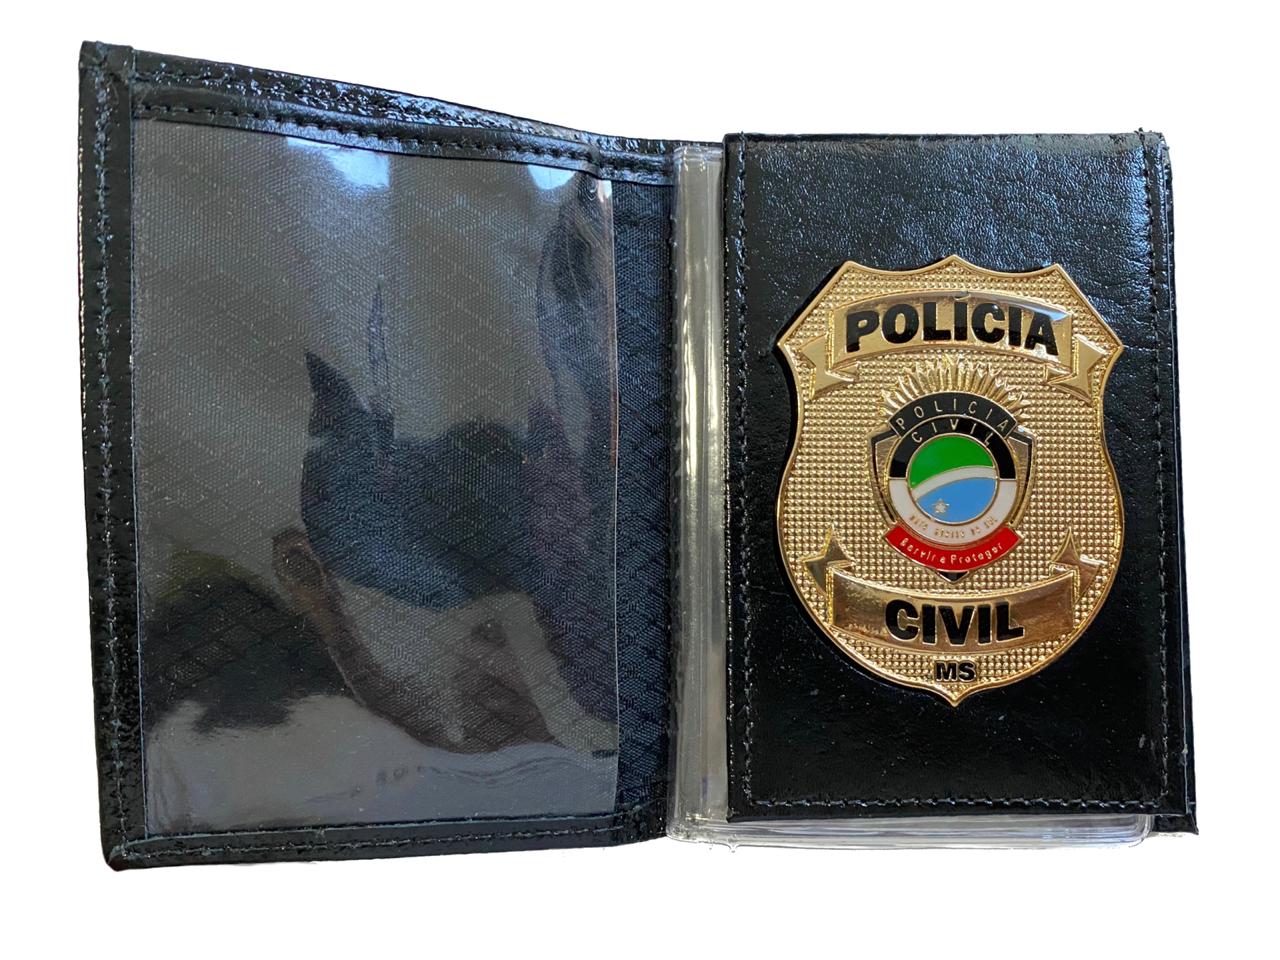 POLÍCIA CIVIL MATO GROSSO DO SUL - PCMS NOVO BRASÃO